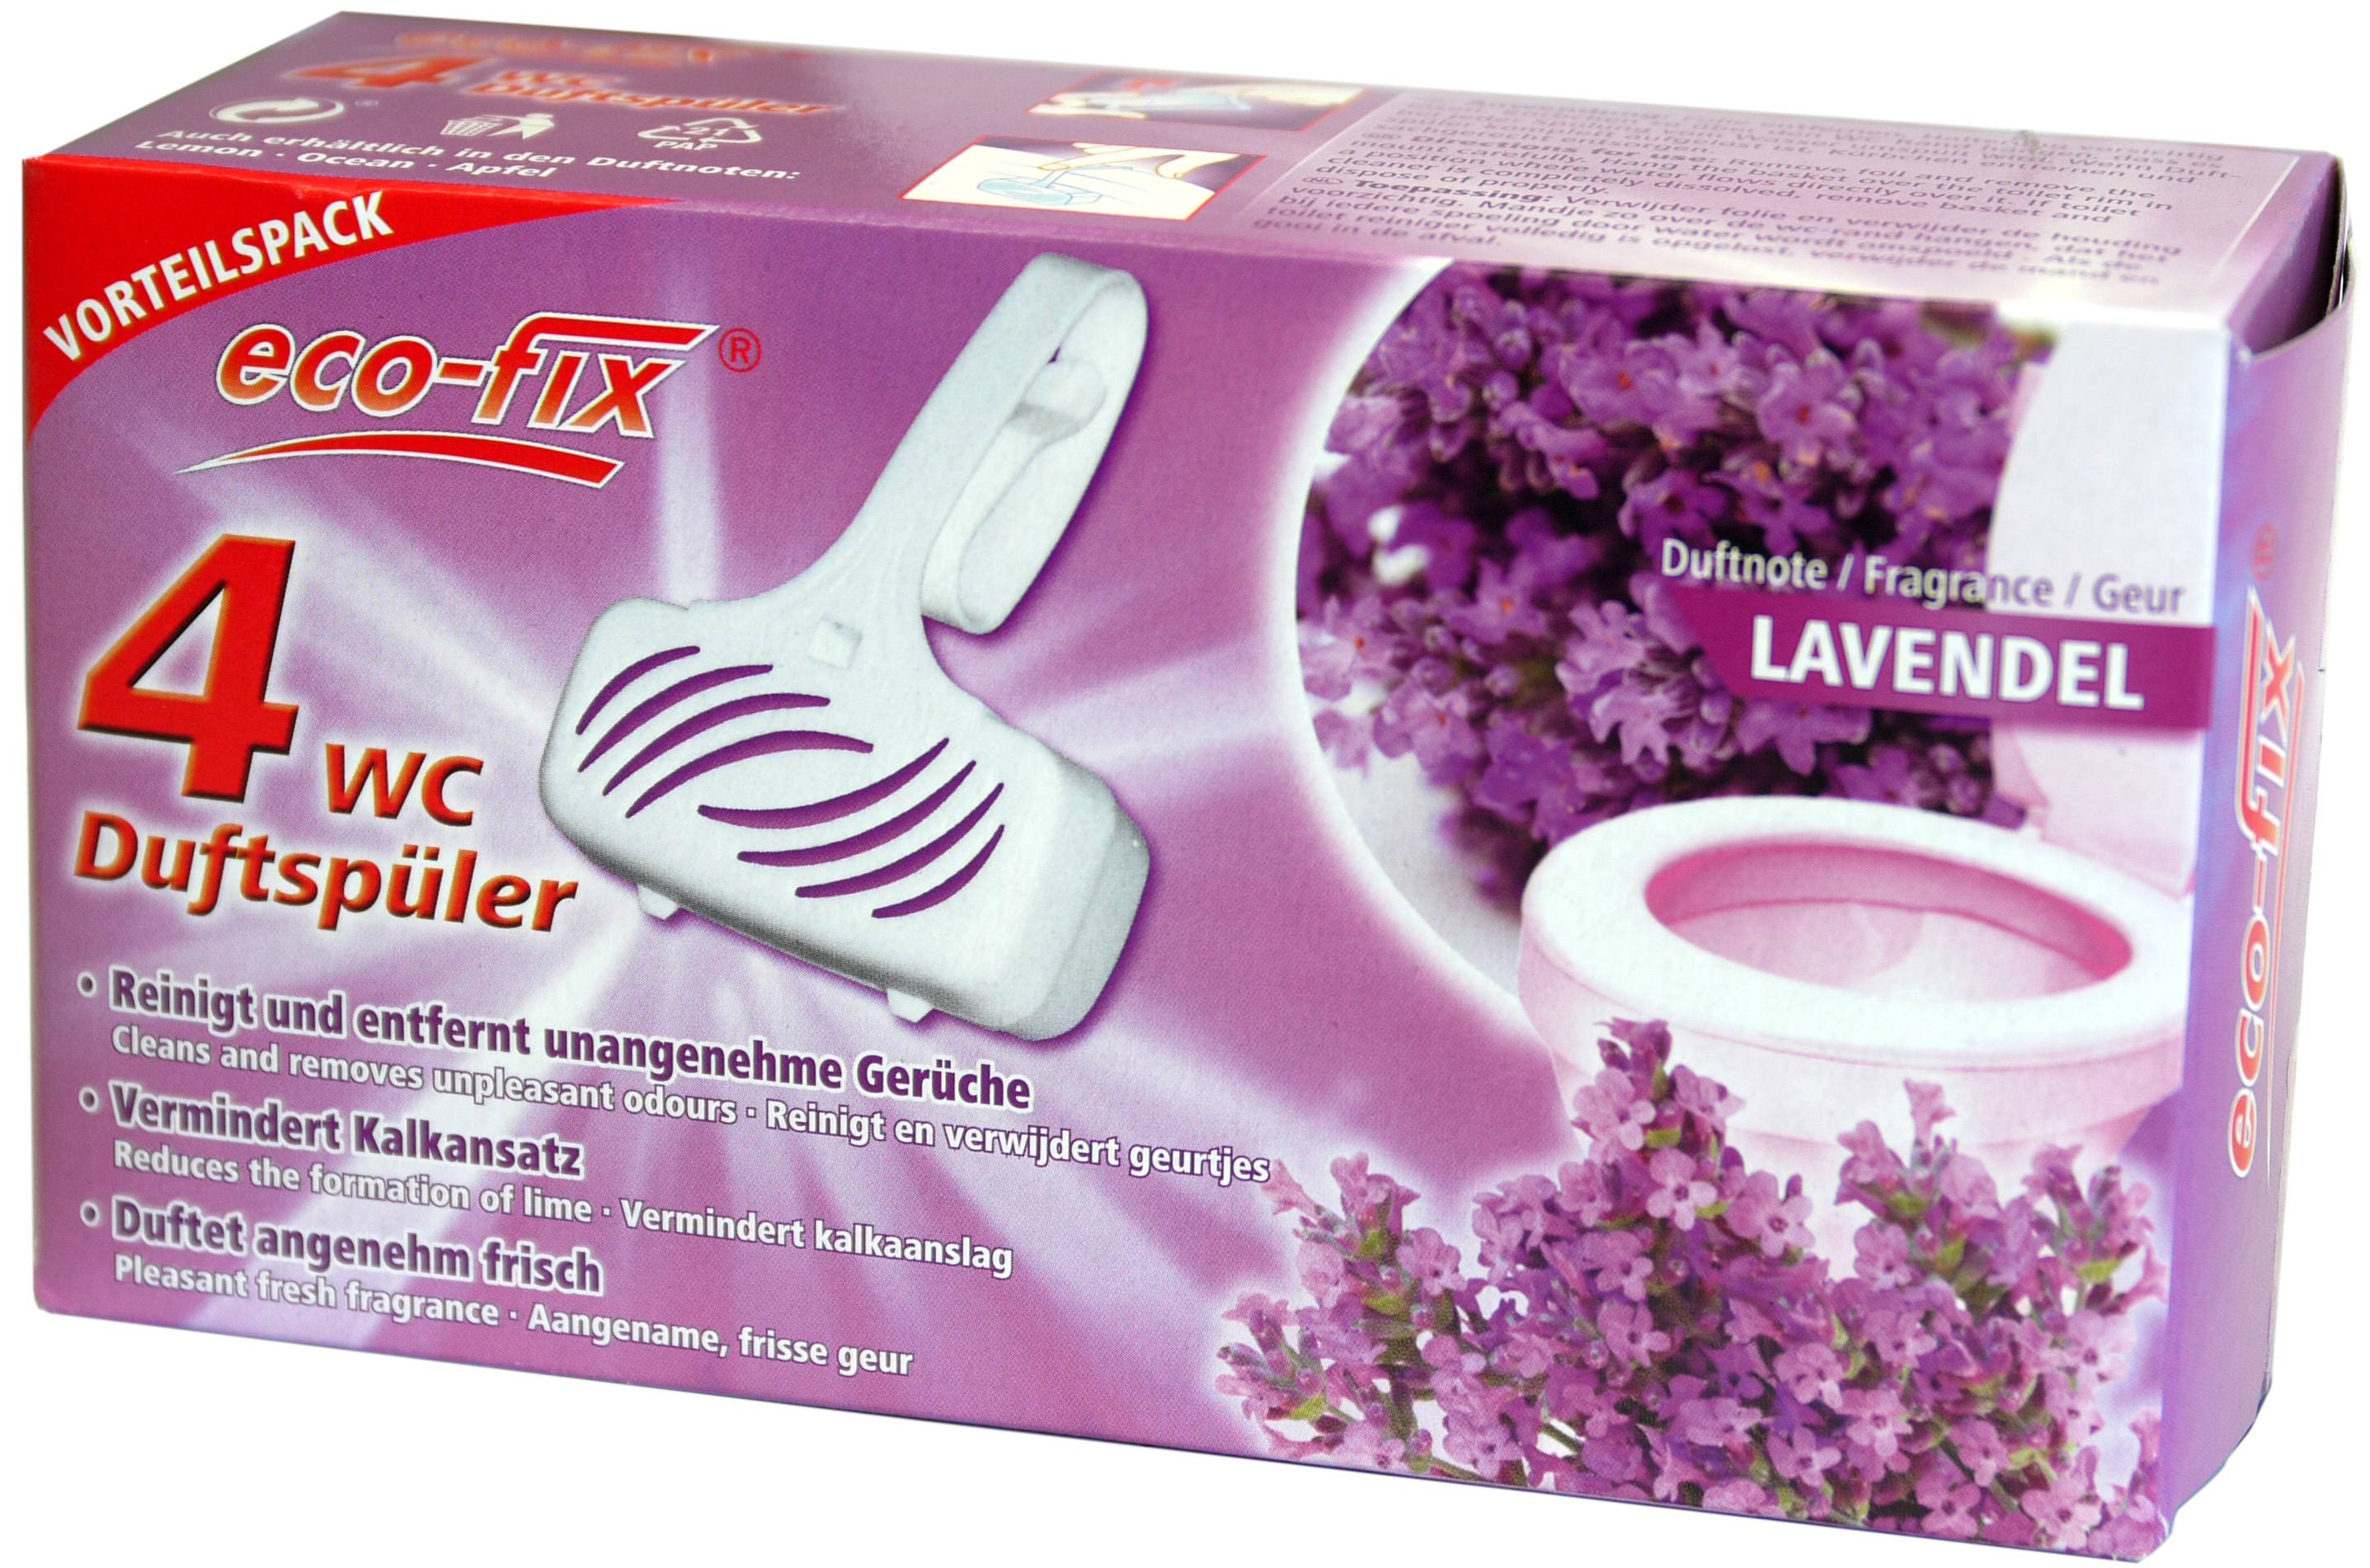 00853 - eco-fix 4er WC Duftspüler -Lavendel- 4 x 33g